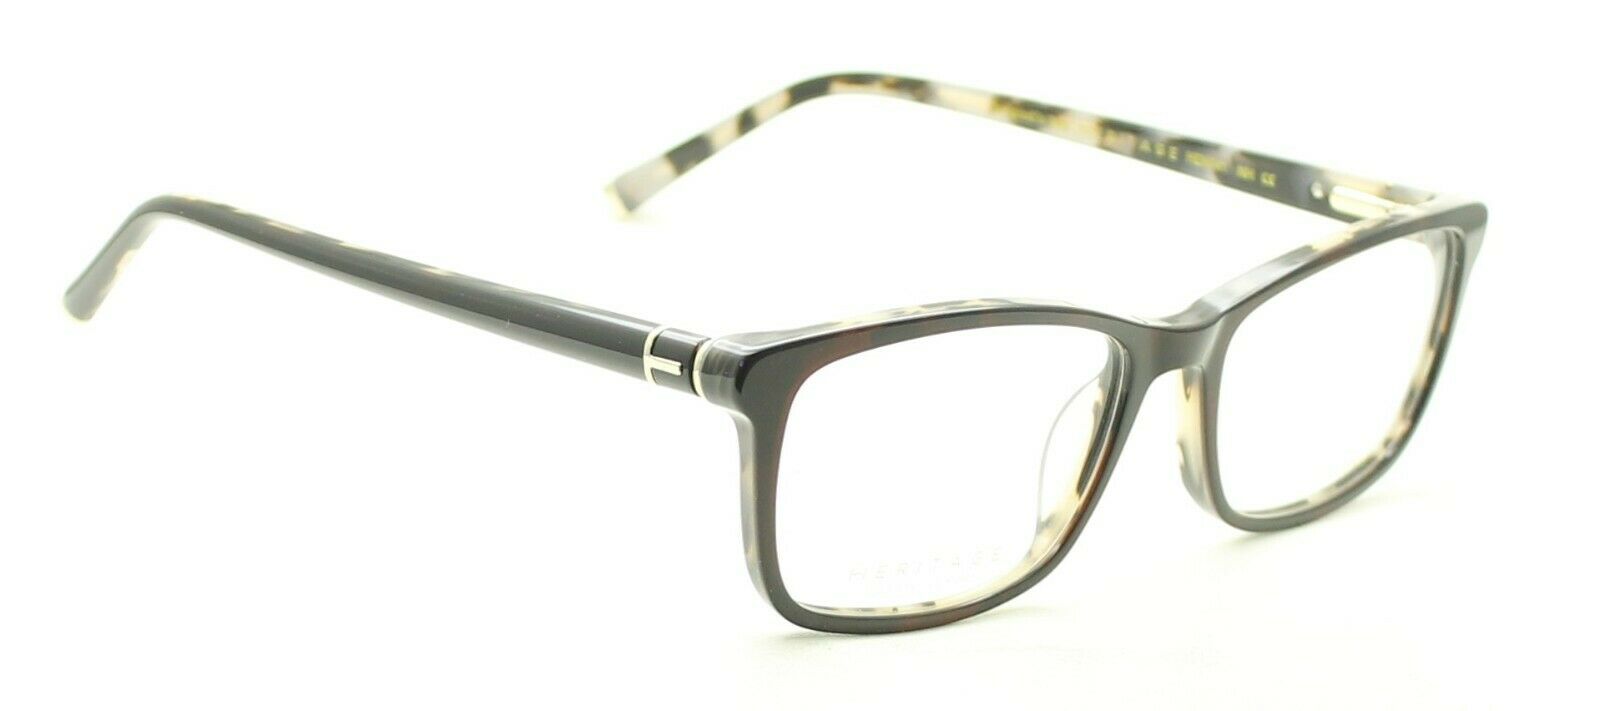 HERITAGE Iconic Luxury HEHF41 NH Eyewear FRAMES Eyeglasses RX Optical Glasses